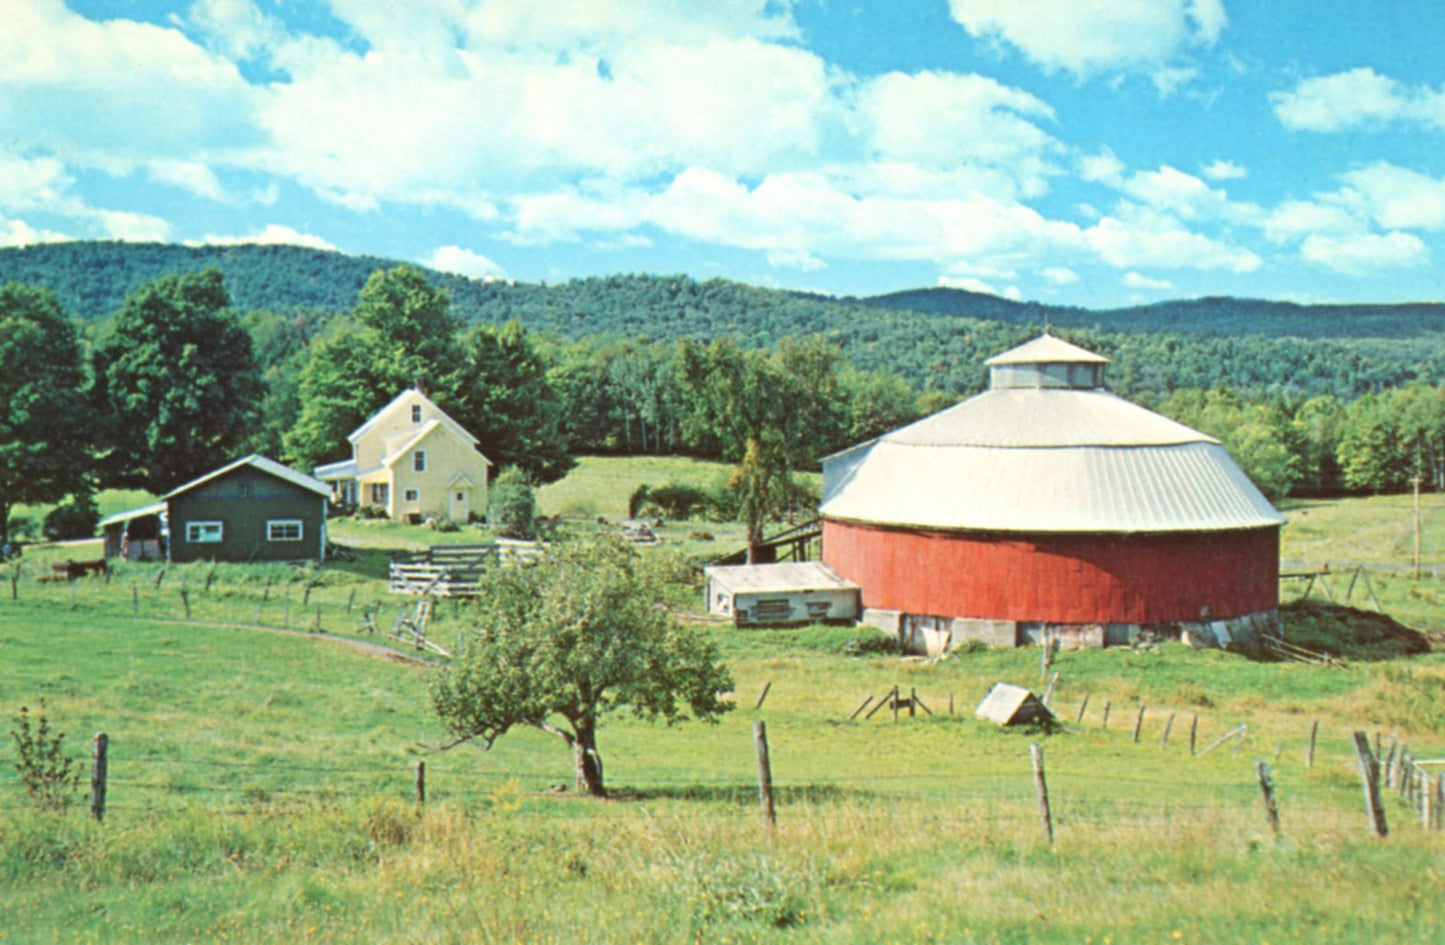 Round  Barn ENOSBURG VERMONT Vintage Postcard